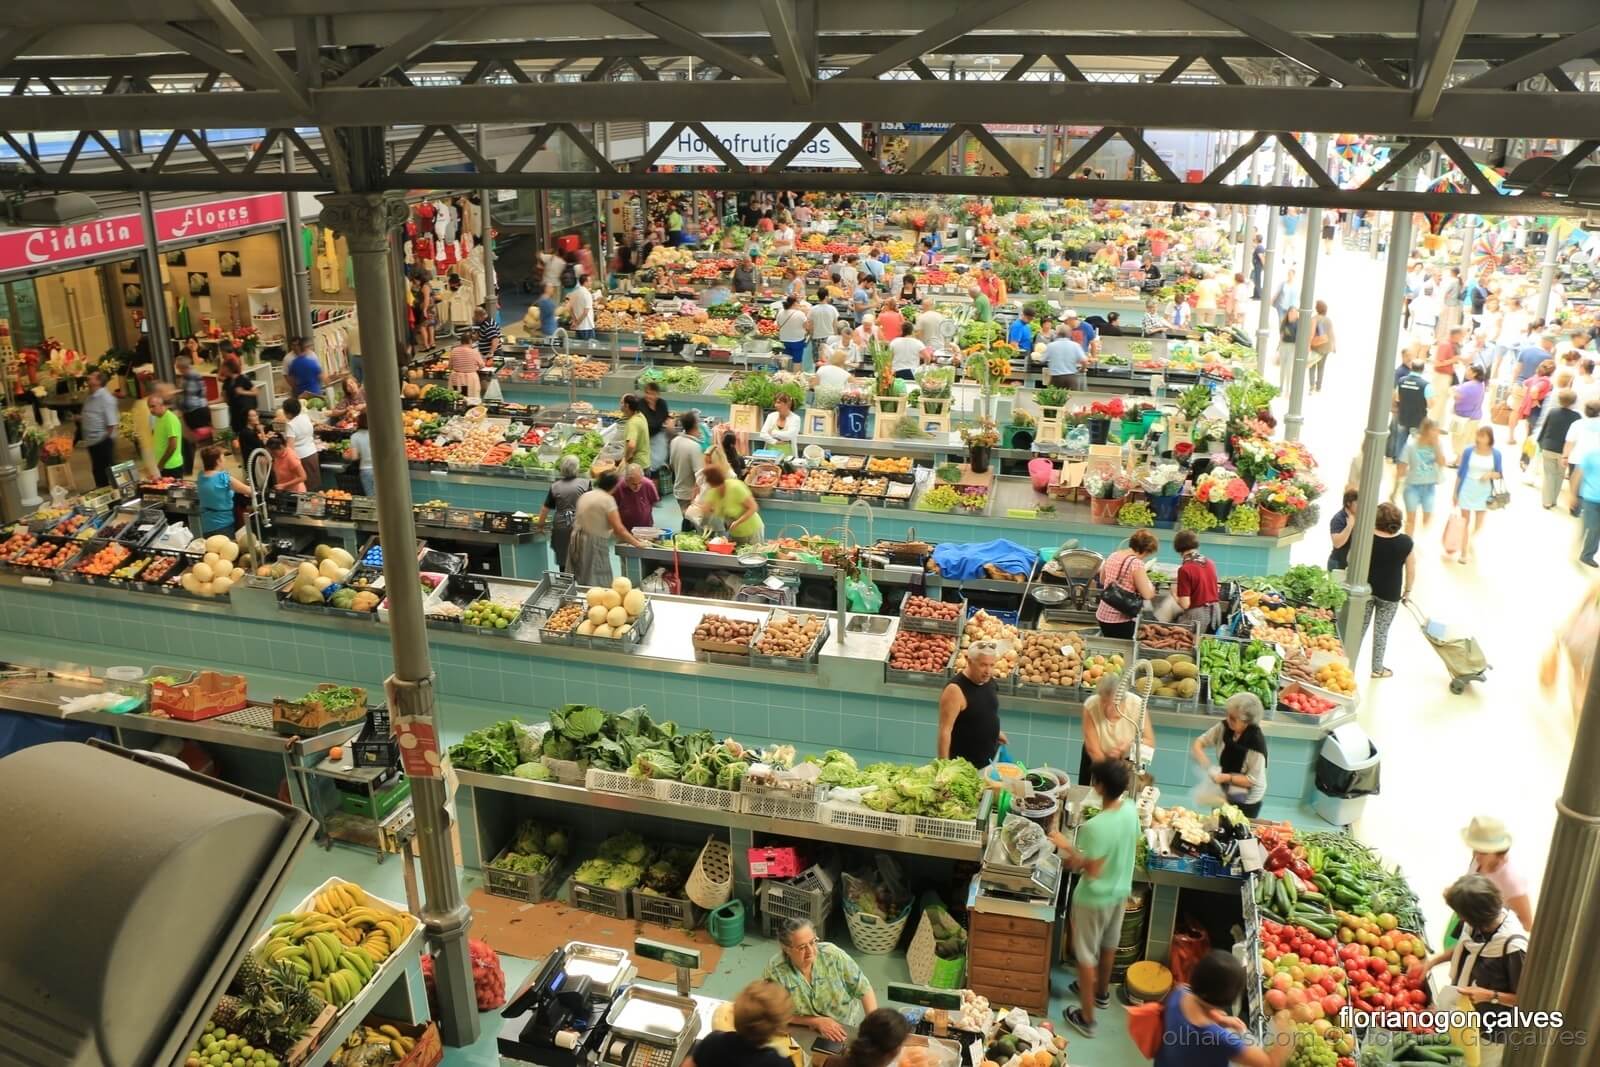 продуктовый рынок Фигейра да Фош